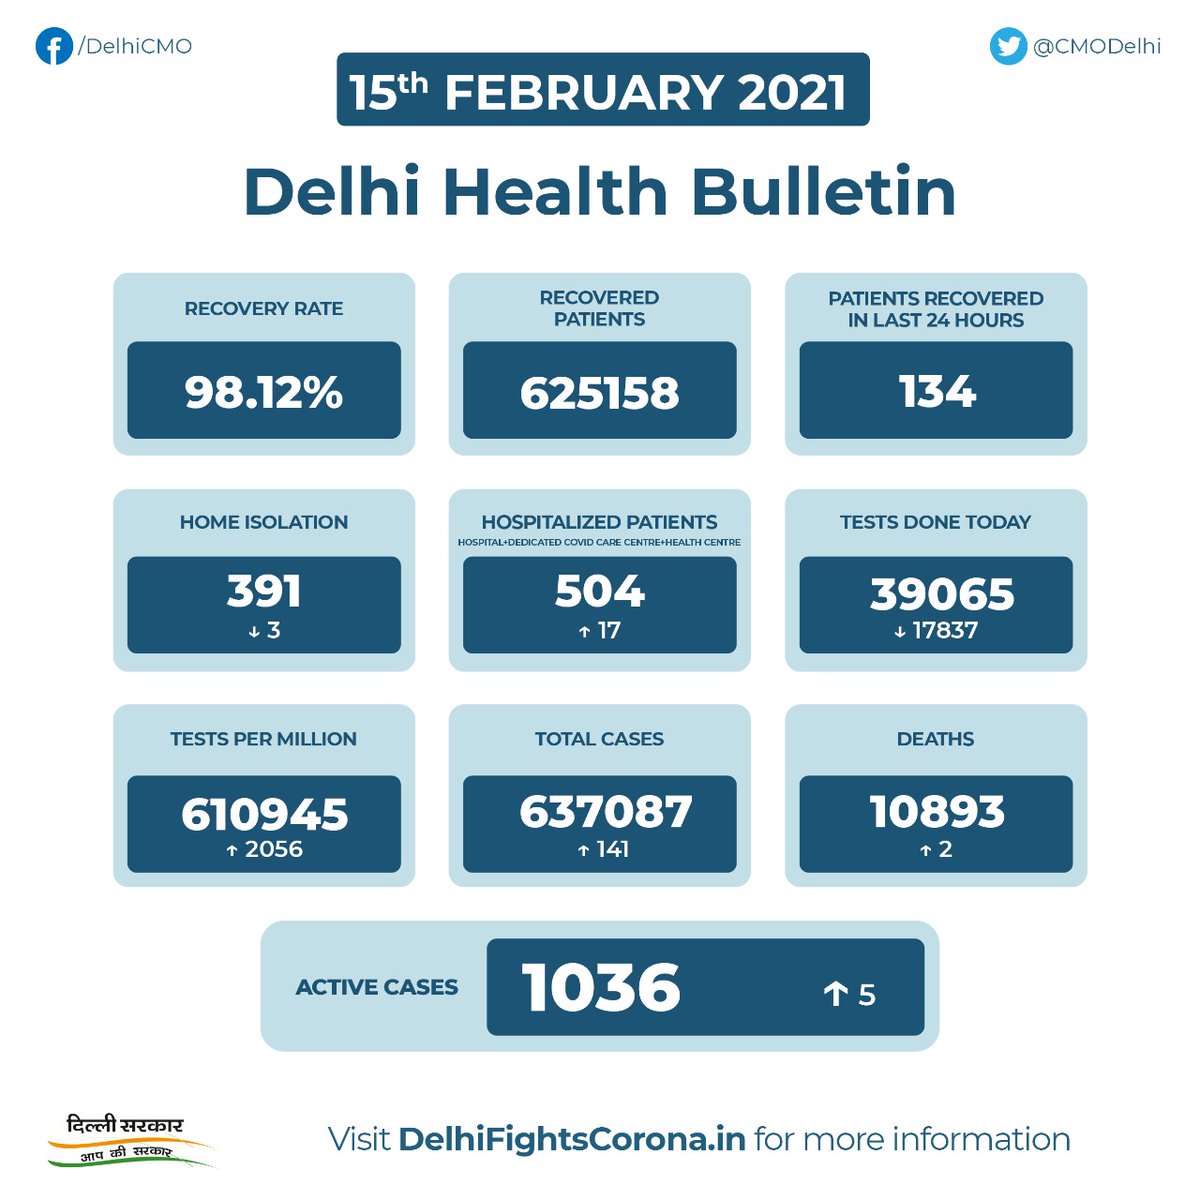 Cmo Delhi Delhi Health Bulletin 15th February 21 Delhifightscorona